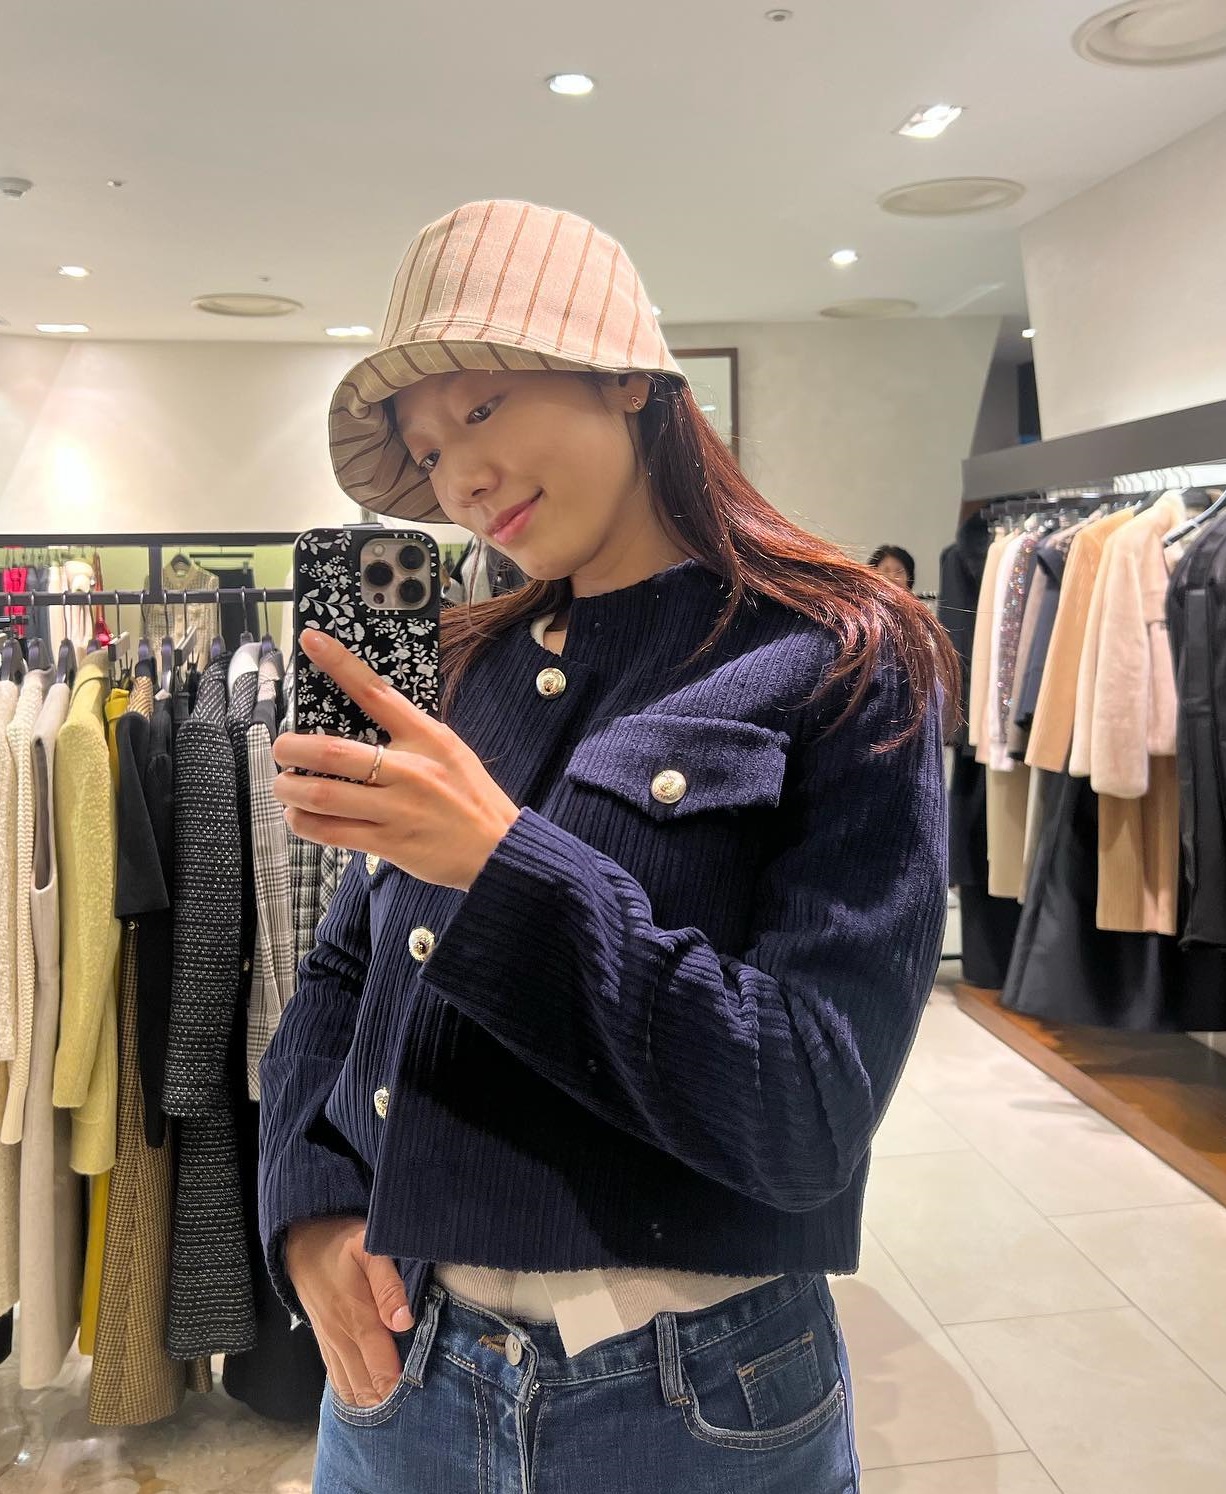 Bộ sưu tập áo khoác đẹp mê của Park Shin Hye: Toàn kiểu sang trọng và trẻ trung, phù hợp với tuổi ngoài 30 - Ảnh 5.